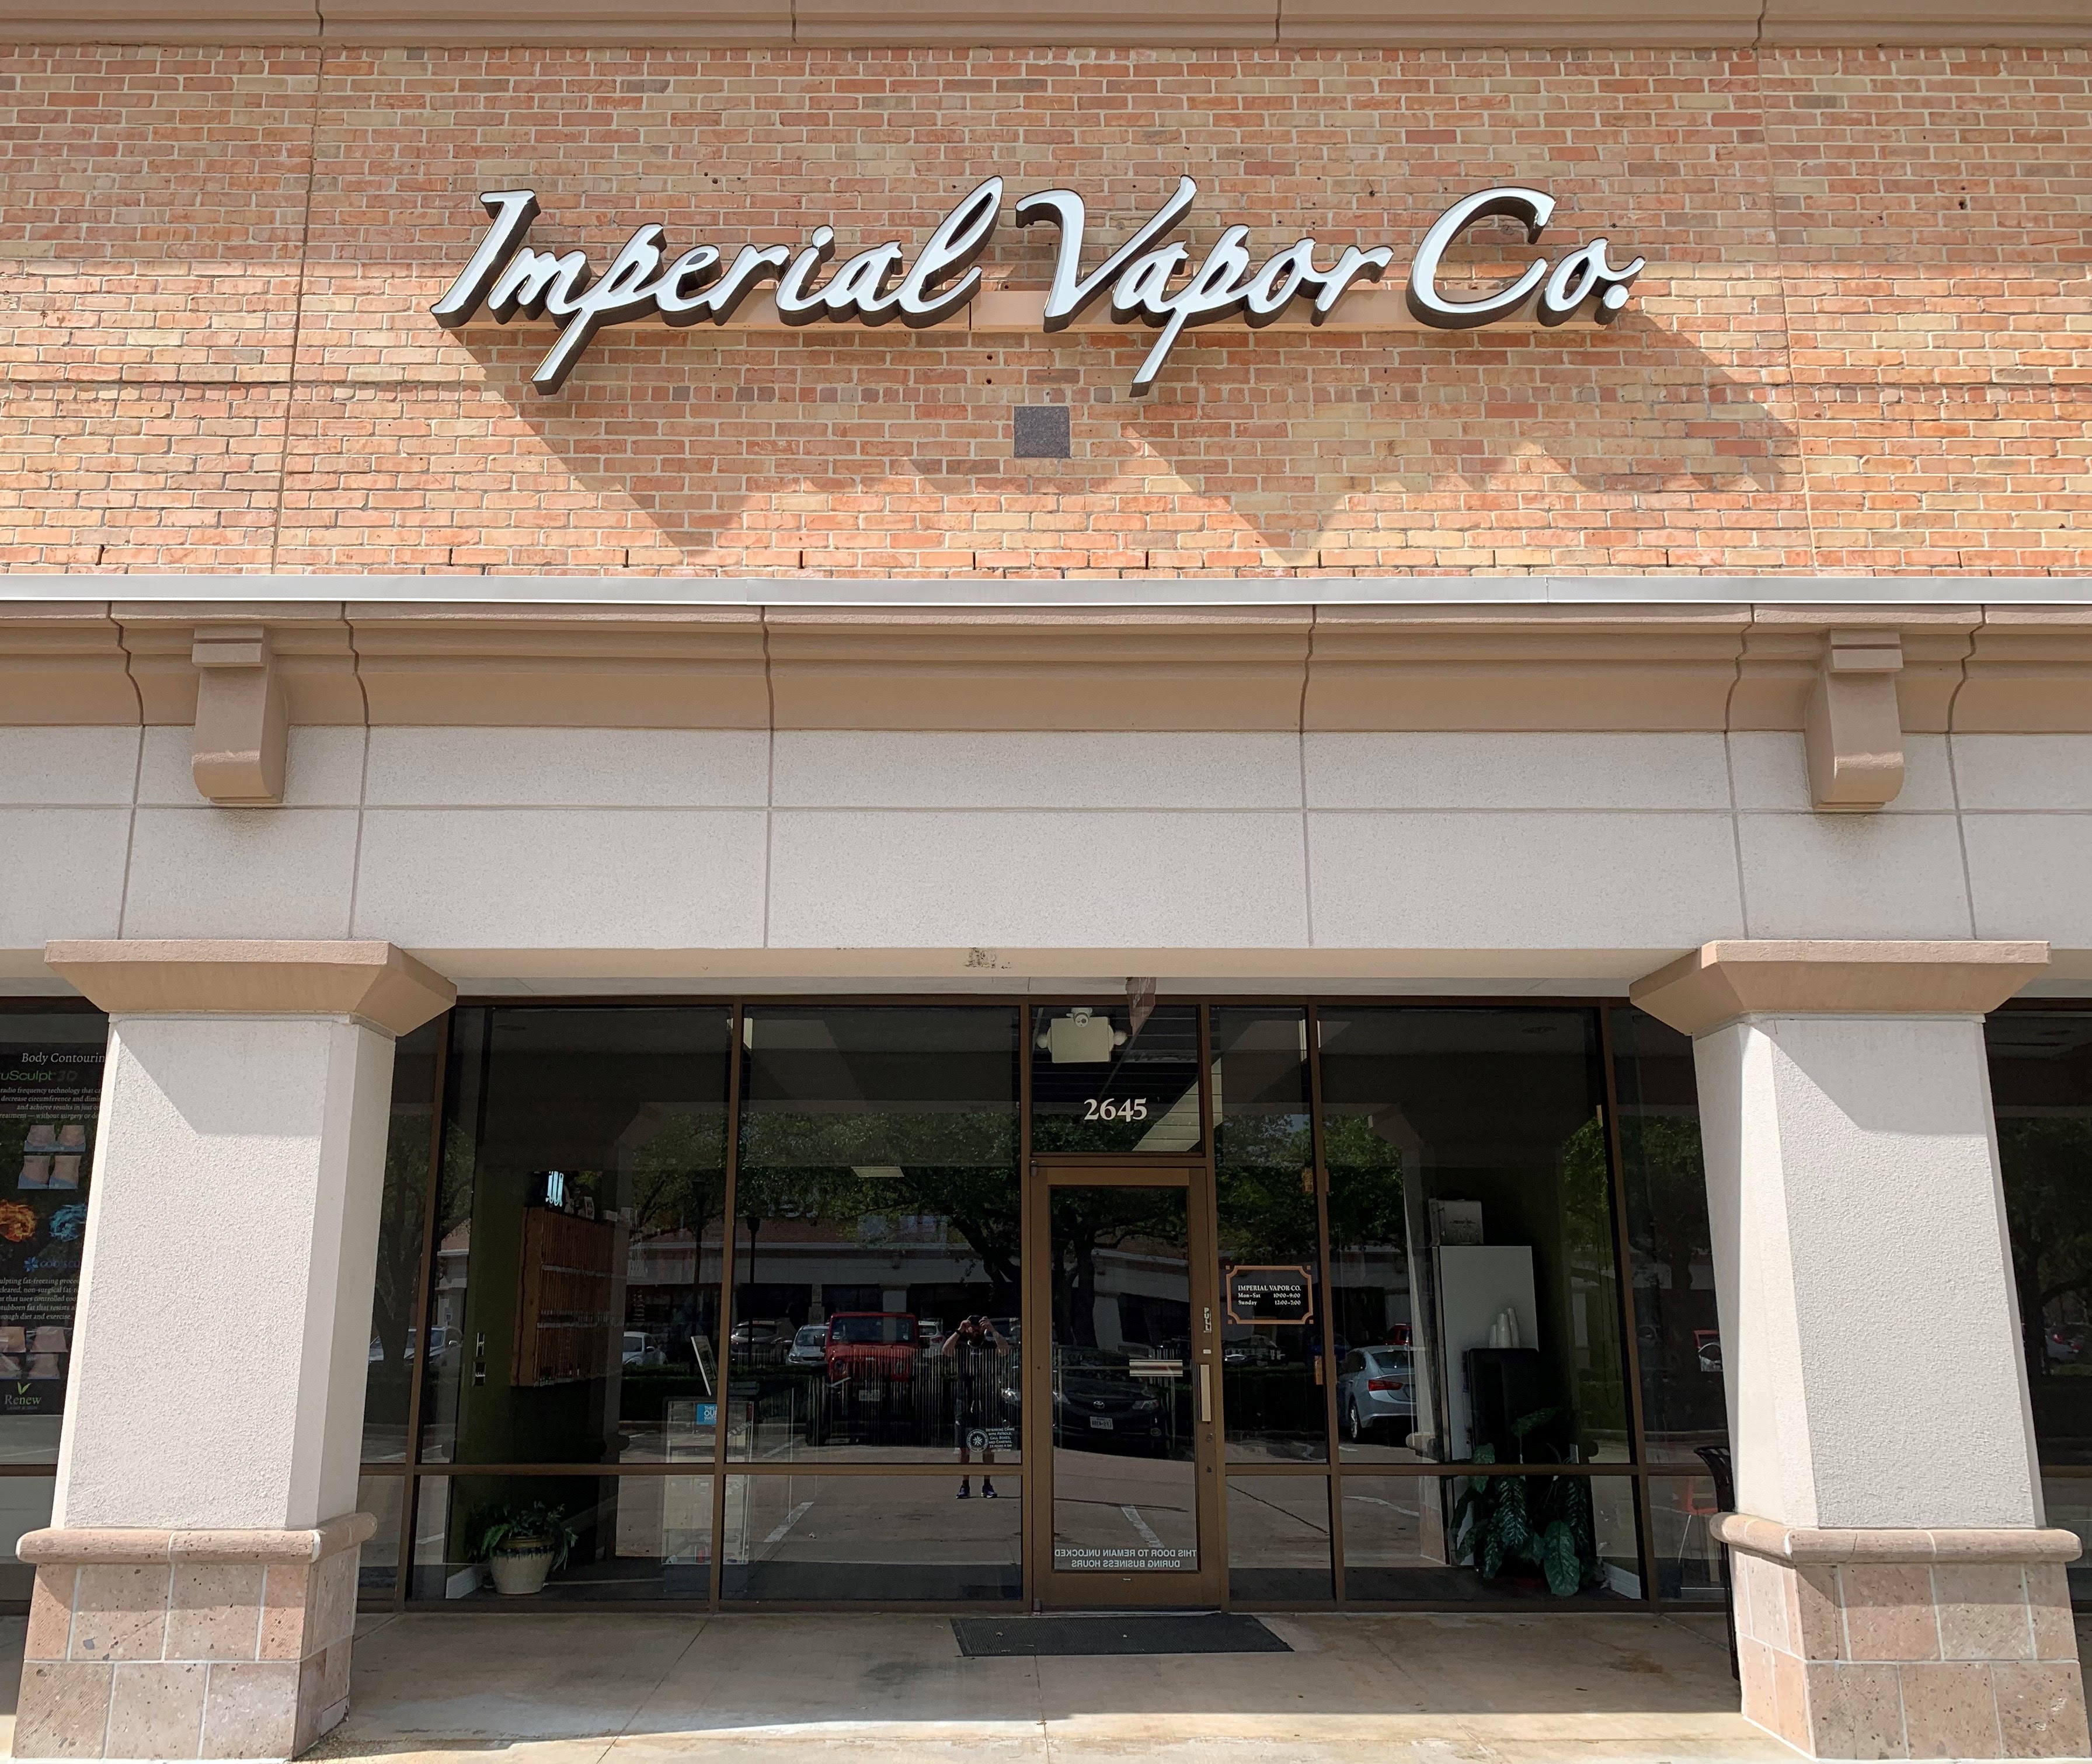 Imperial Vapor Co. - Sugar Land Photo